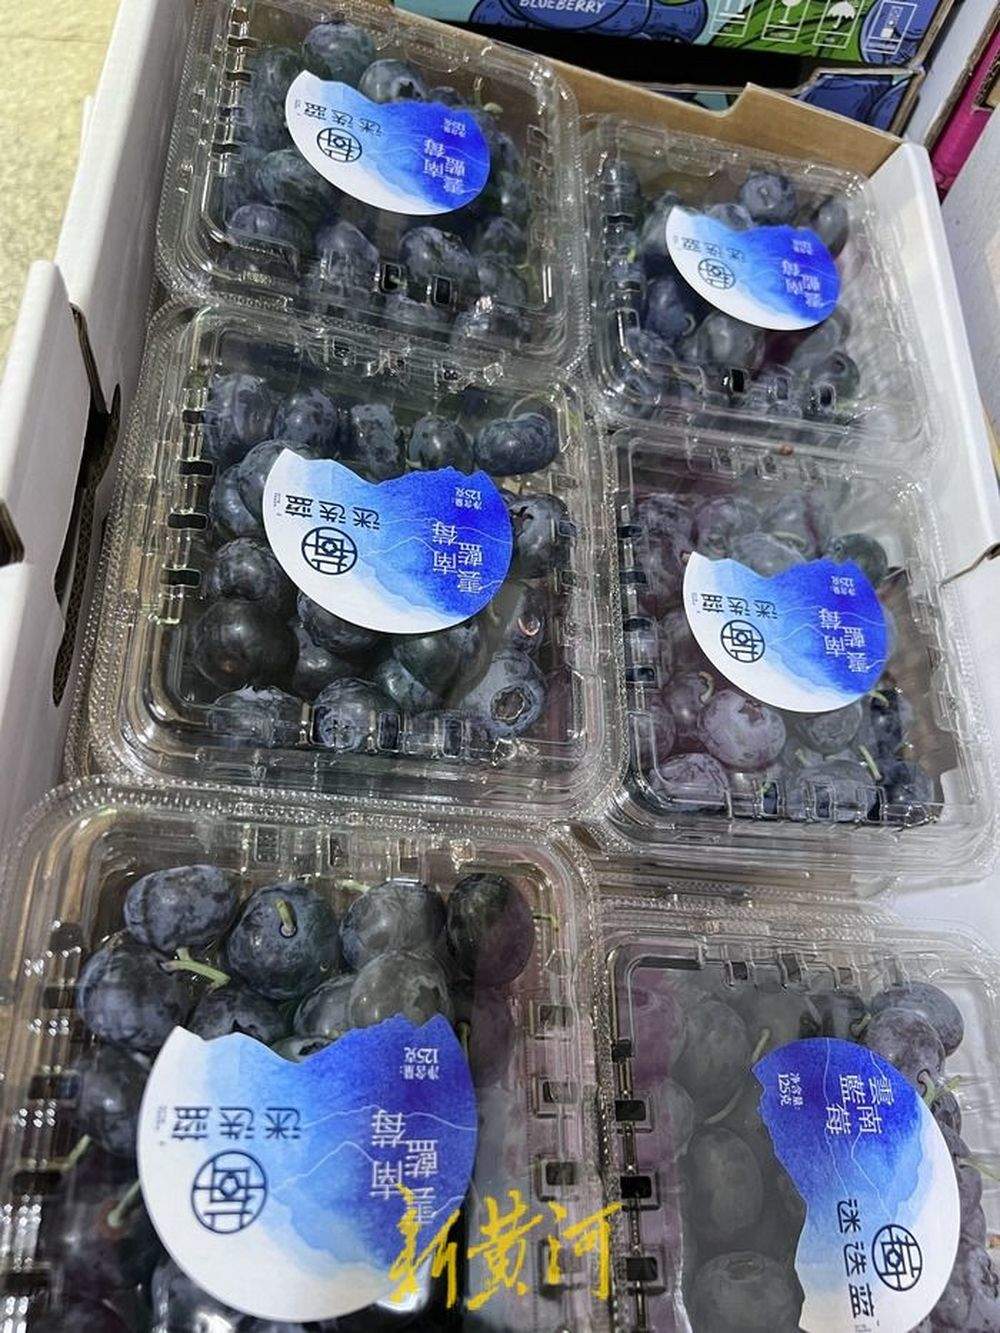 最高218元/斤，国产樱桃、蓝莓上市受热捧，济南有摊位一天售出上百箱